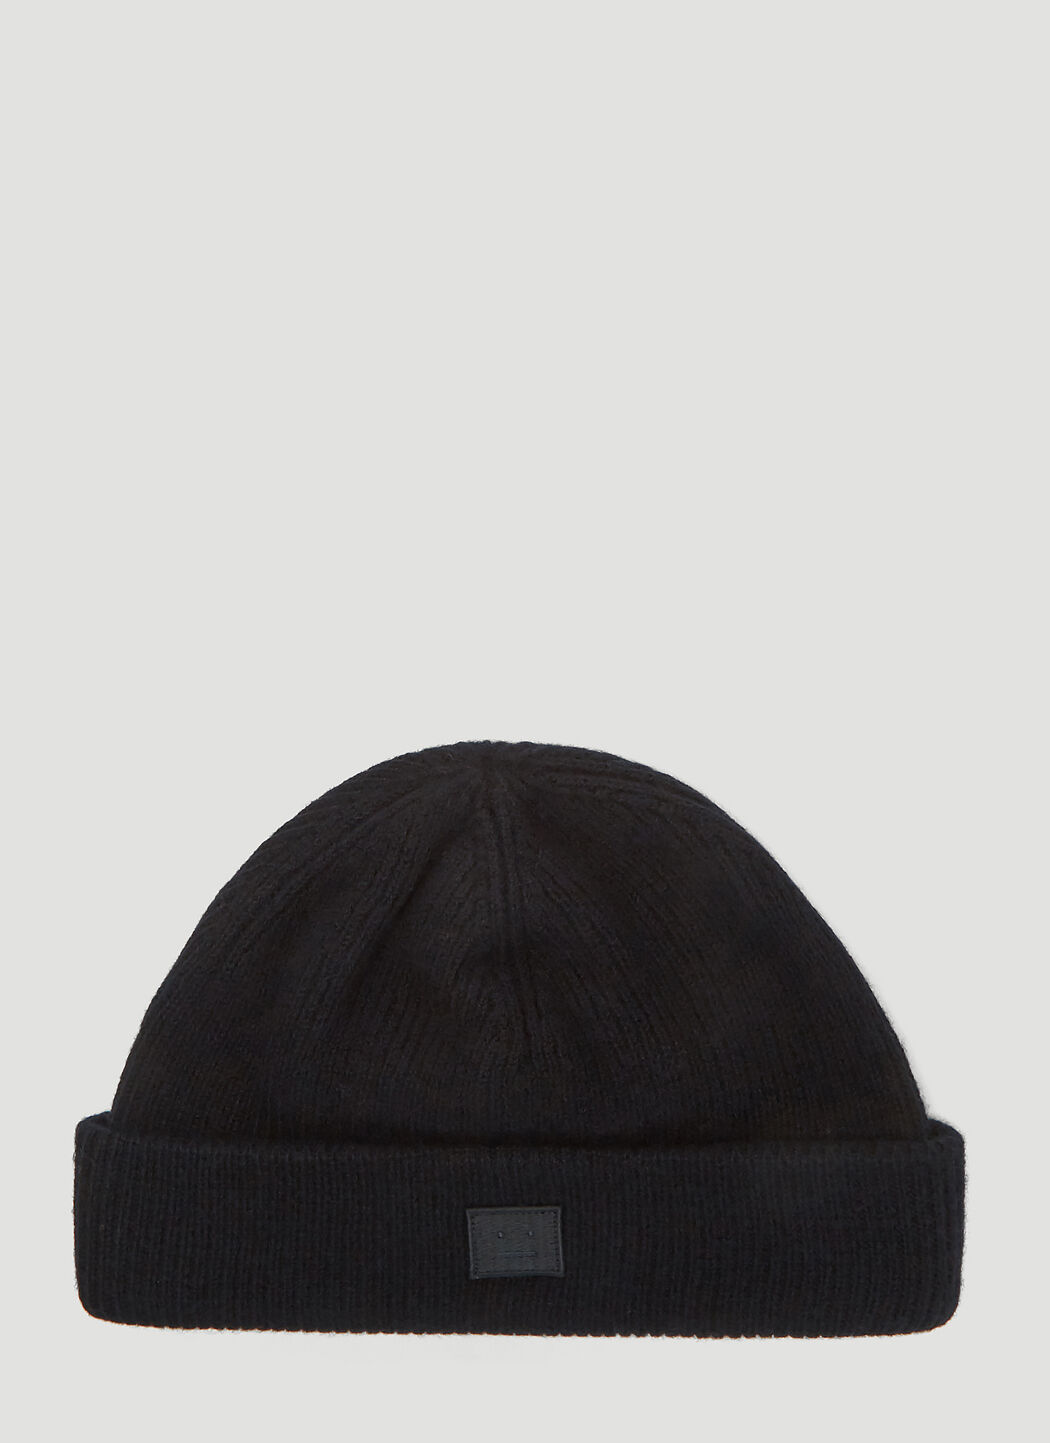 Saint Laurent Kansy Knit Hat Black sla0138032